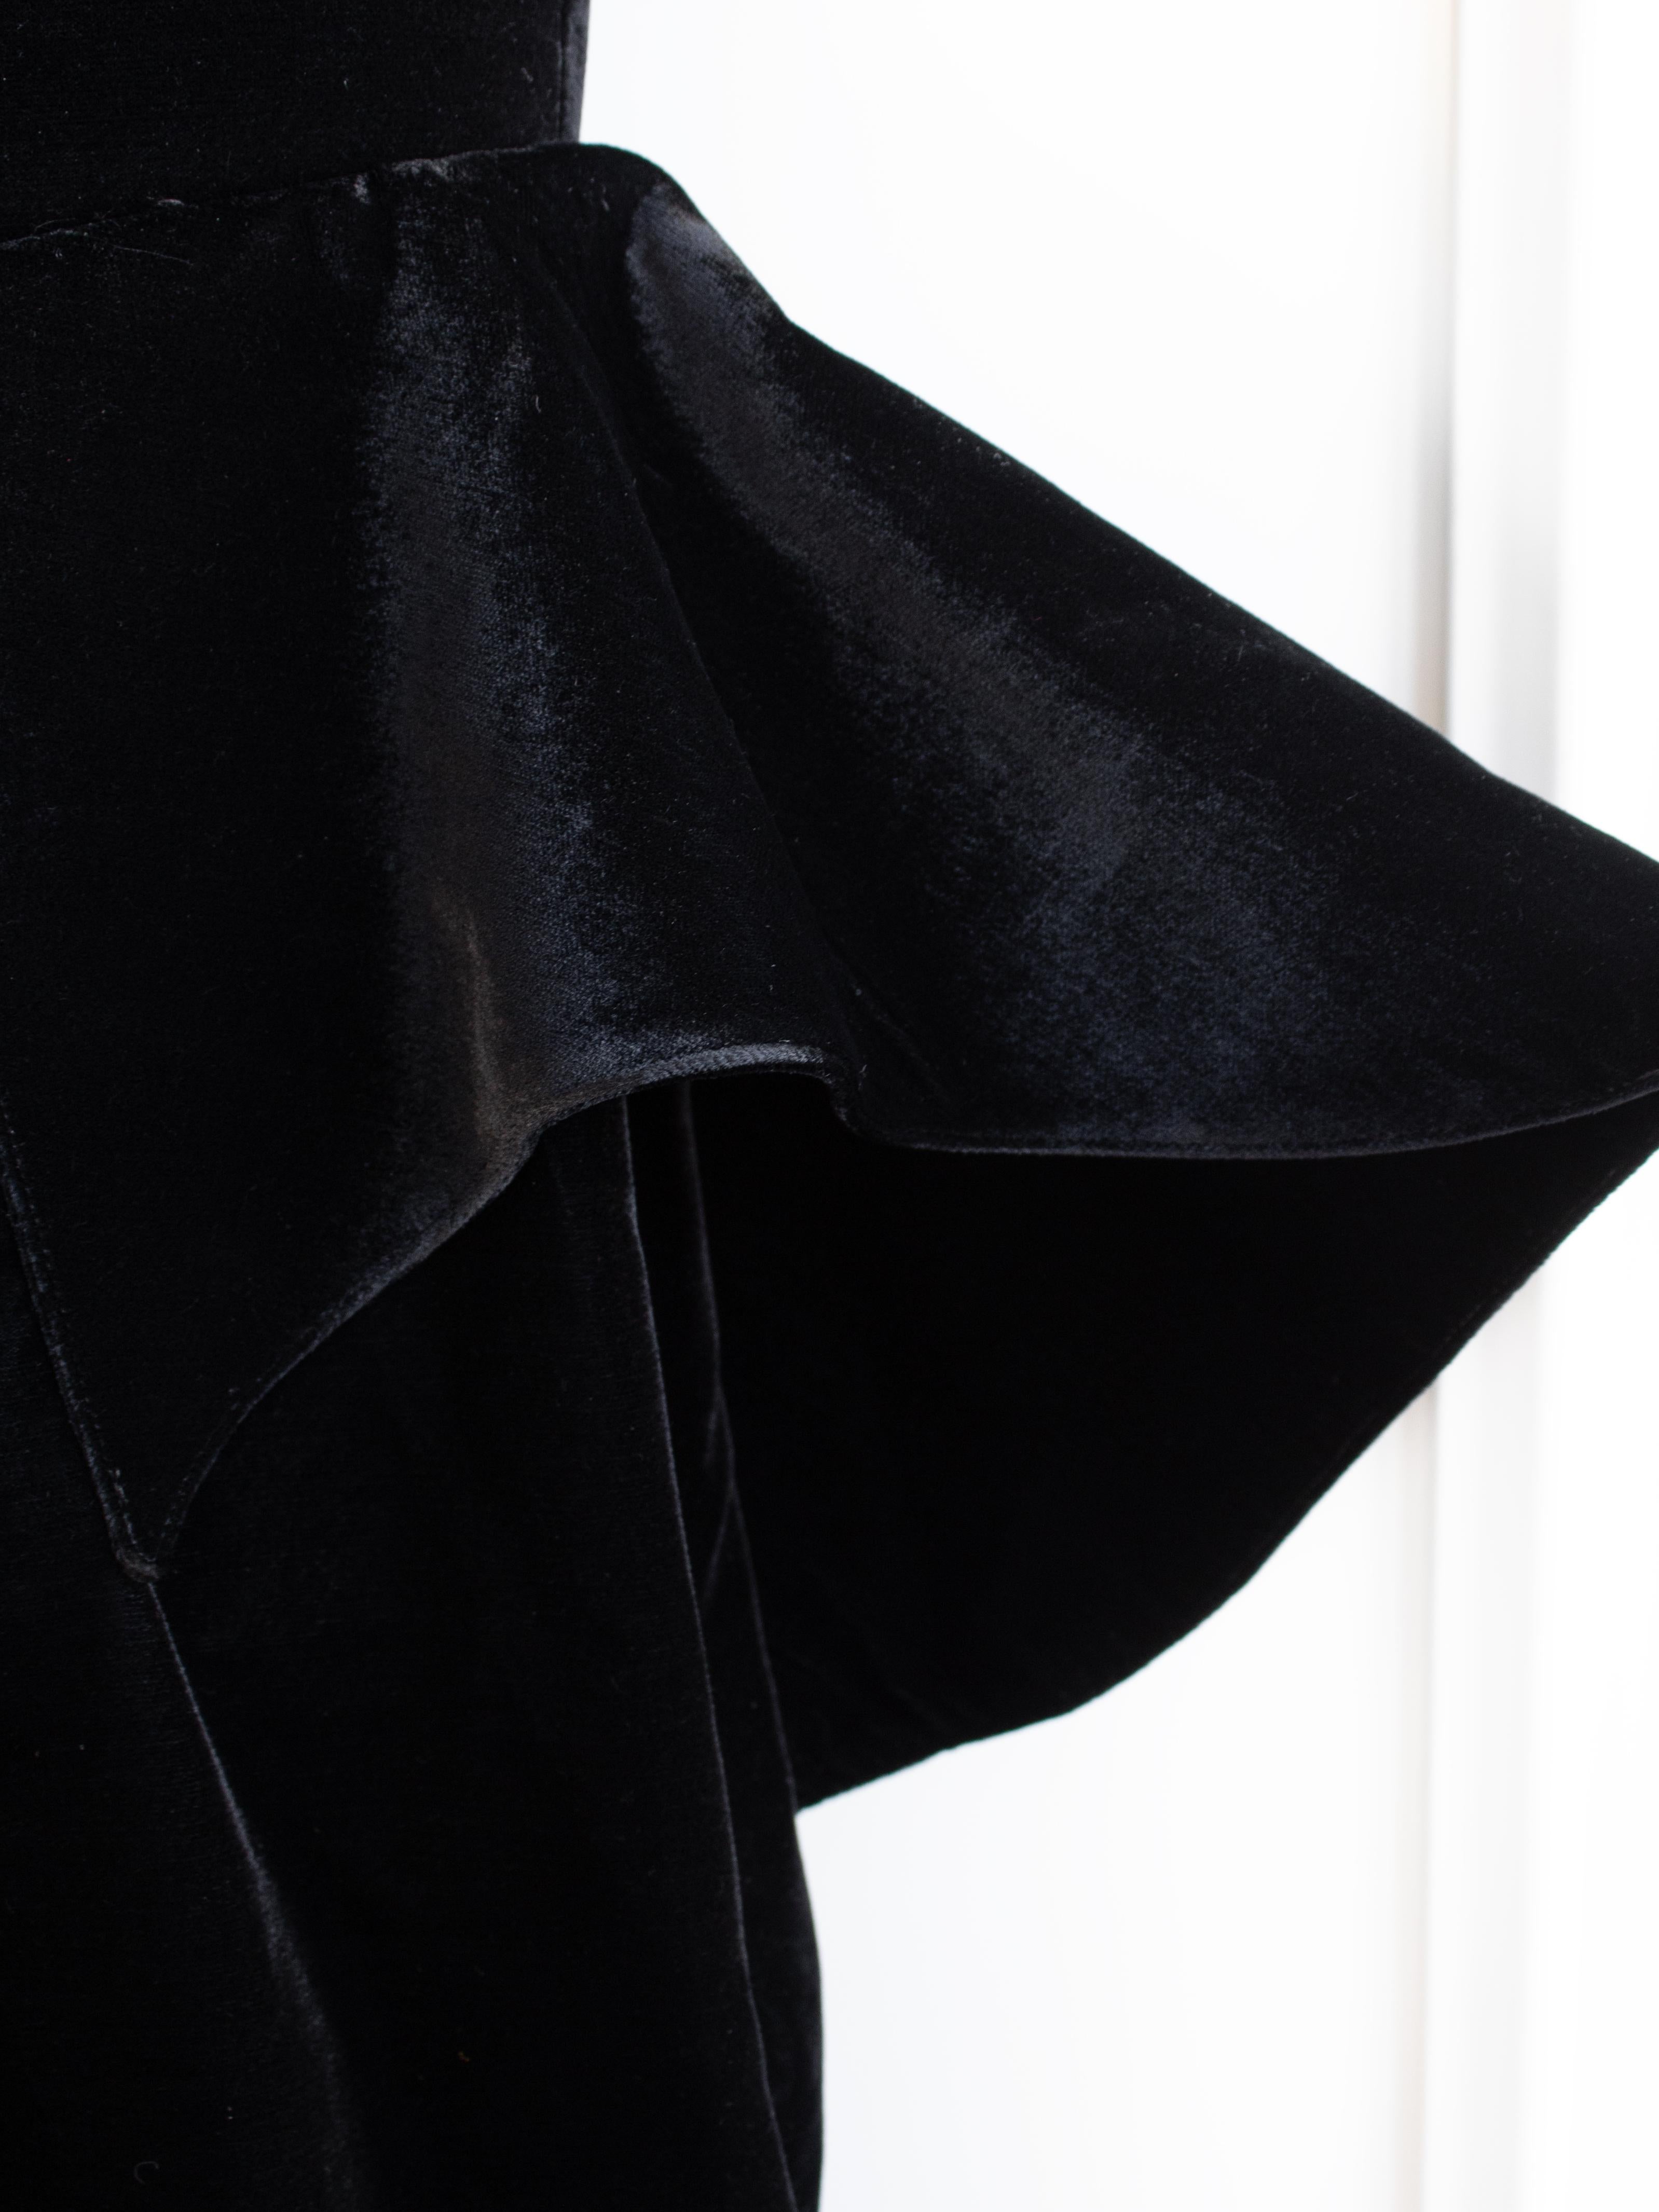 Iconic Thierry Mugler Vintage 1981 Black Velvet Peplum Vampire Dress For Sale 7